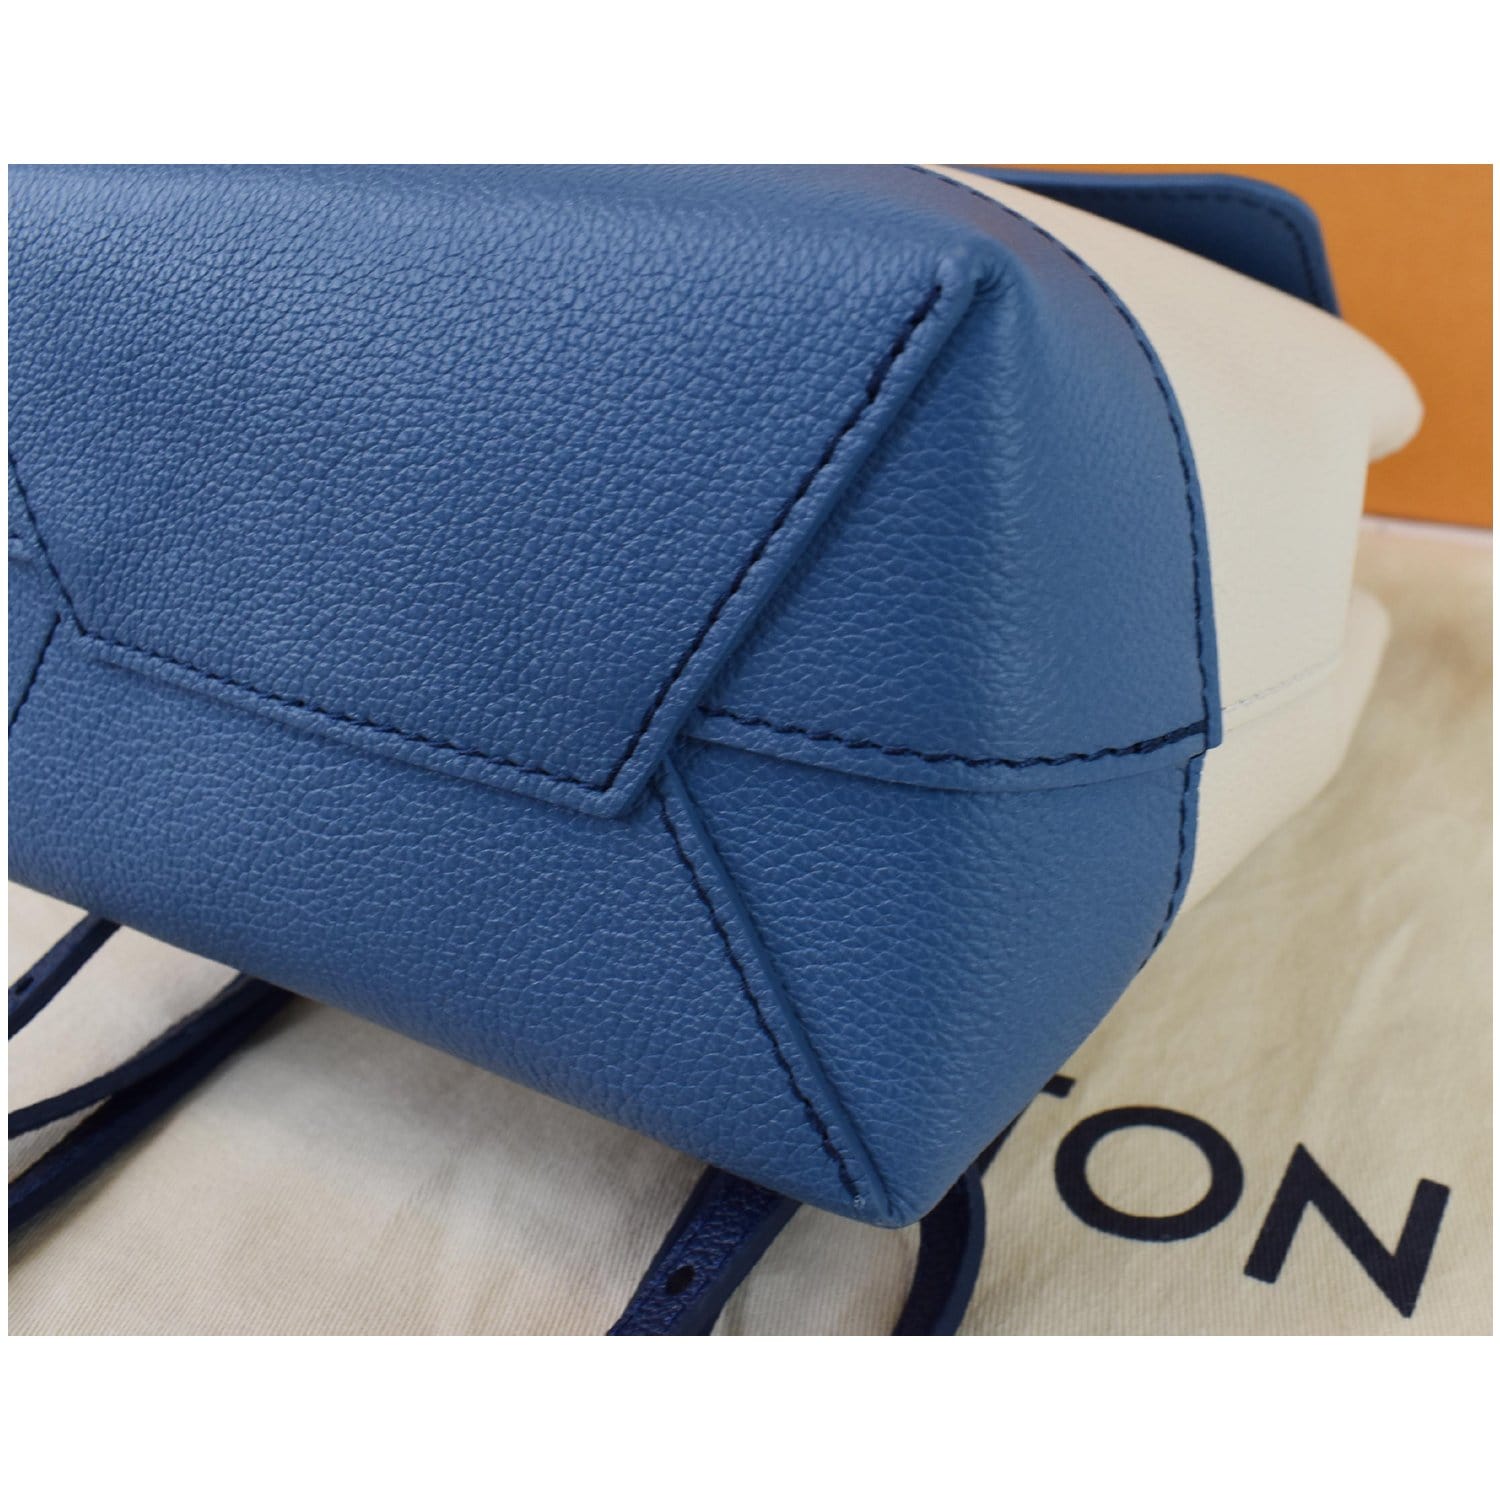 Louis Vuitton - Authenticated Lockme Purse - Leather Blue Plain for Women, Good Condition